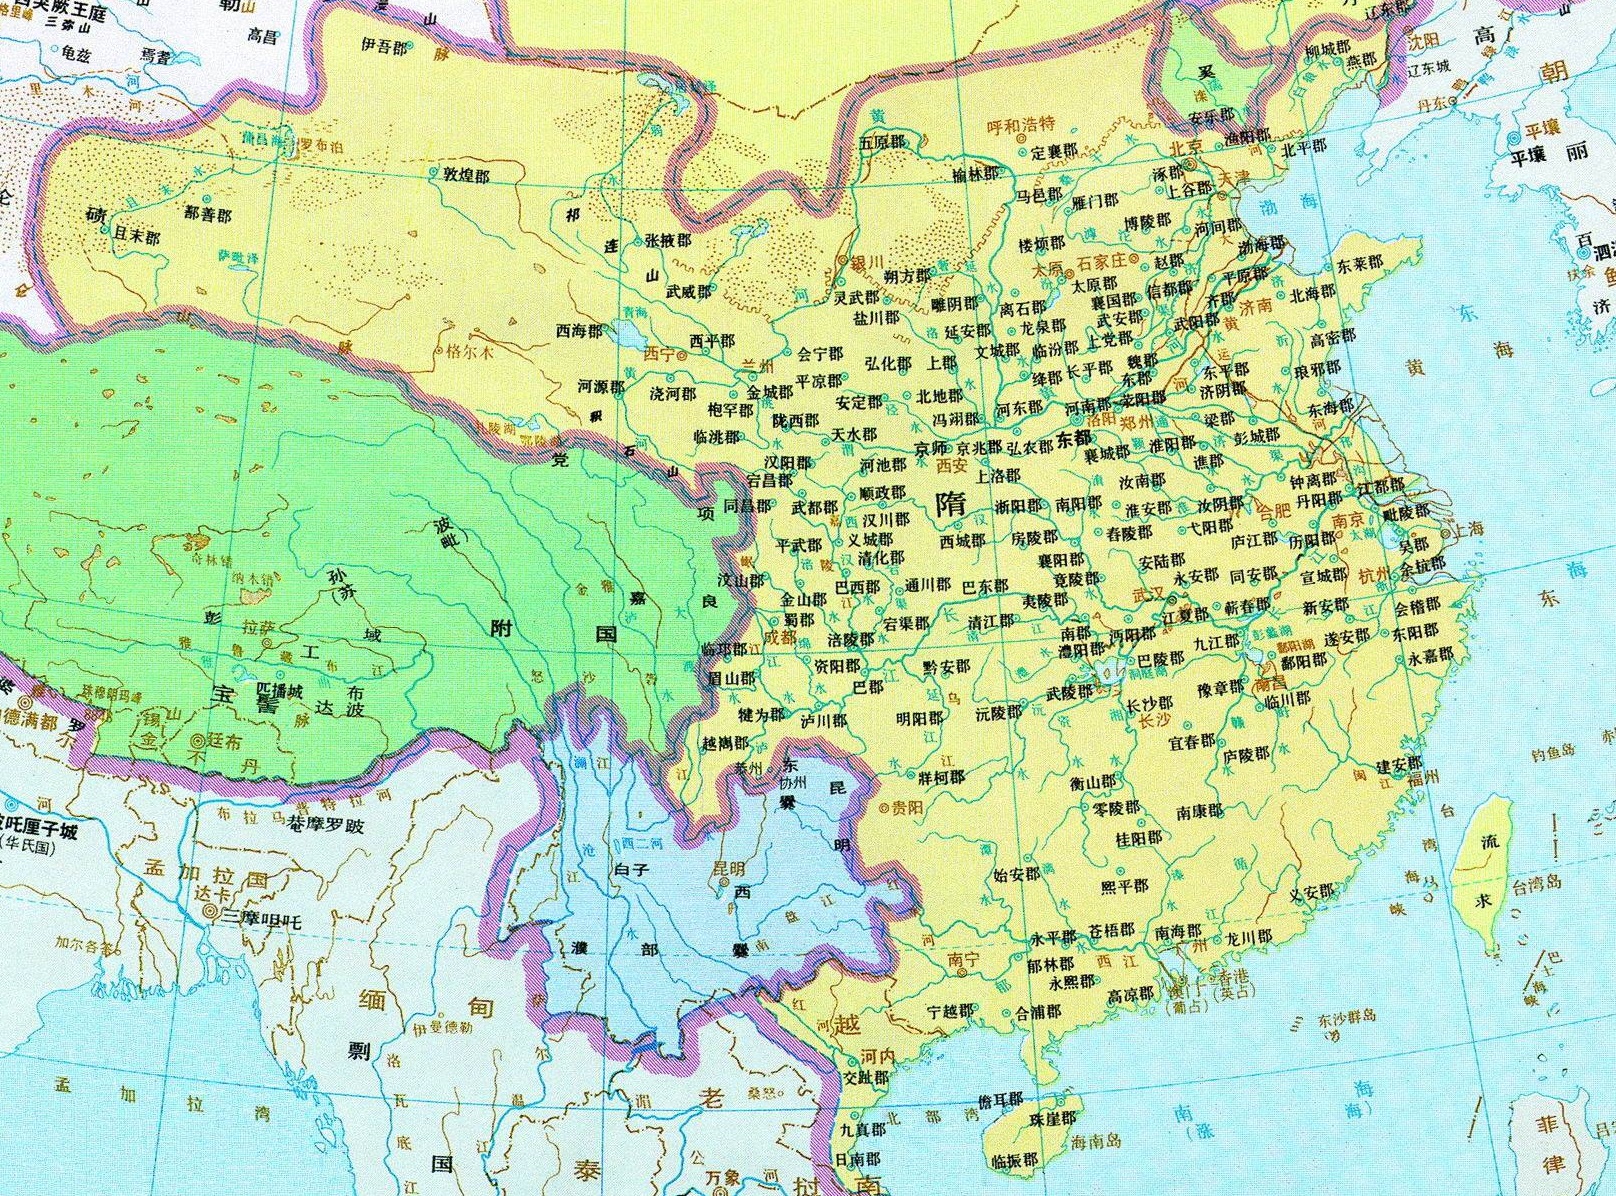 隋代地图(公元612年)